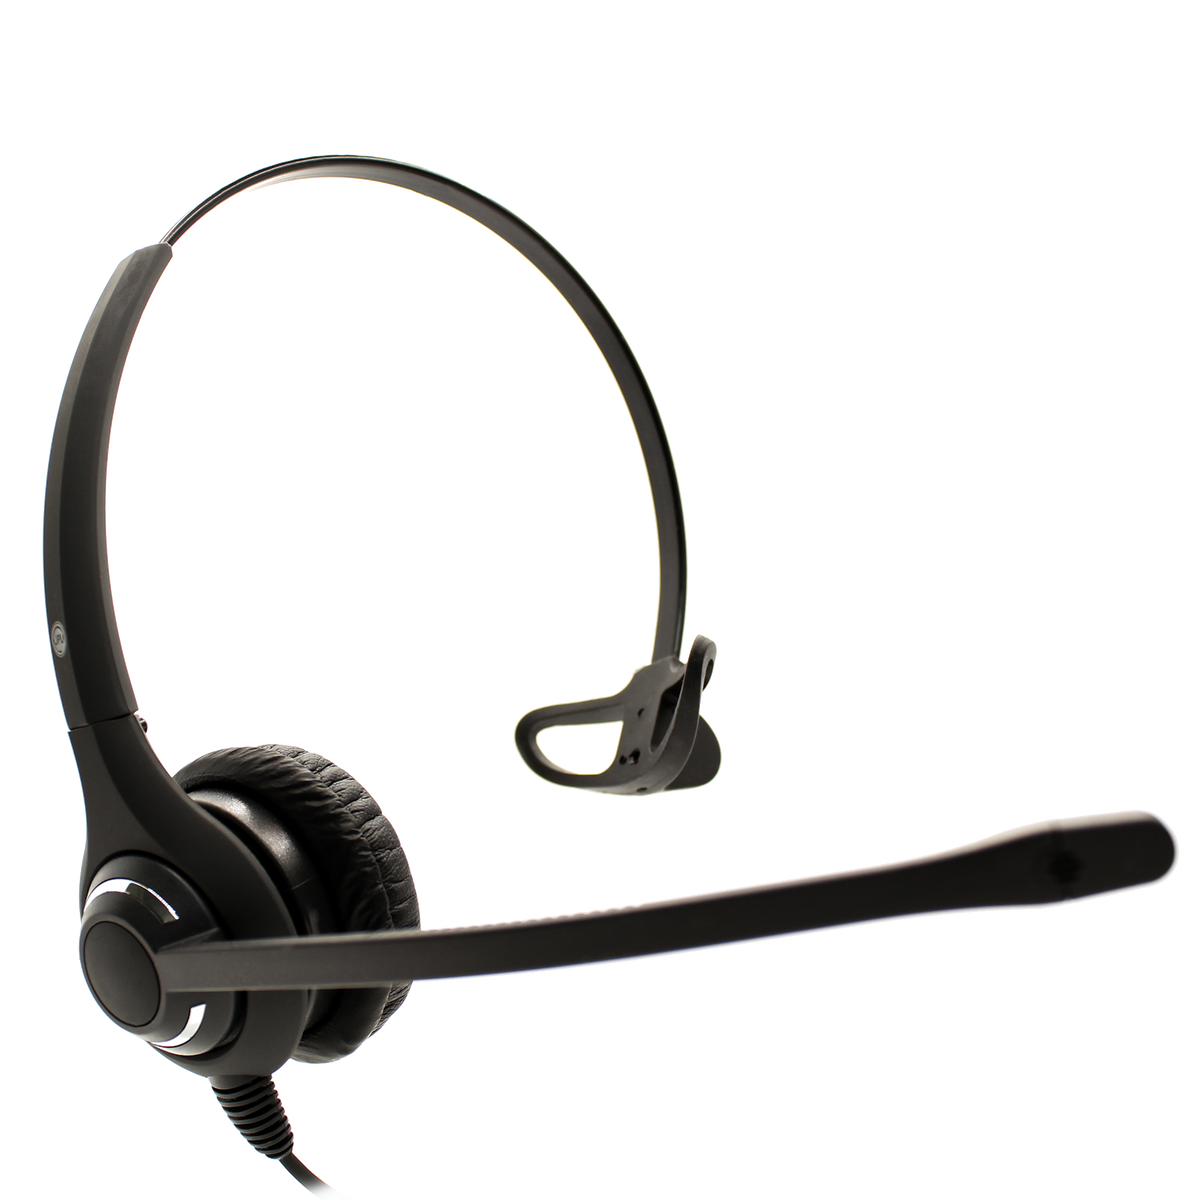 JPL Professional QD Monaural/ Binaural Headset w/Noise